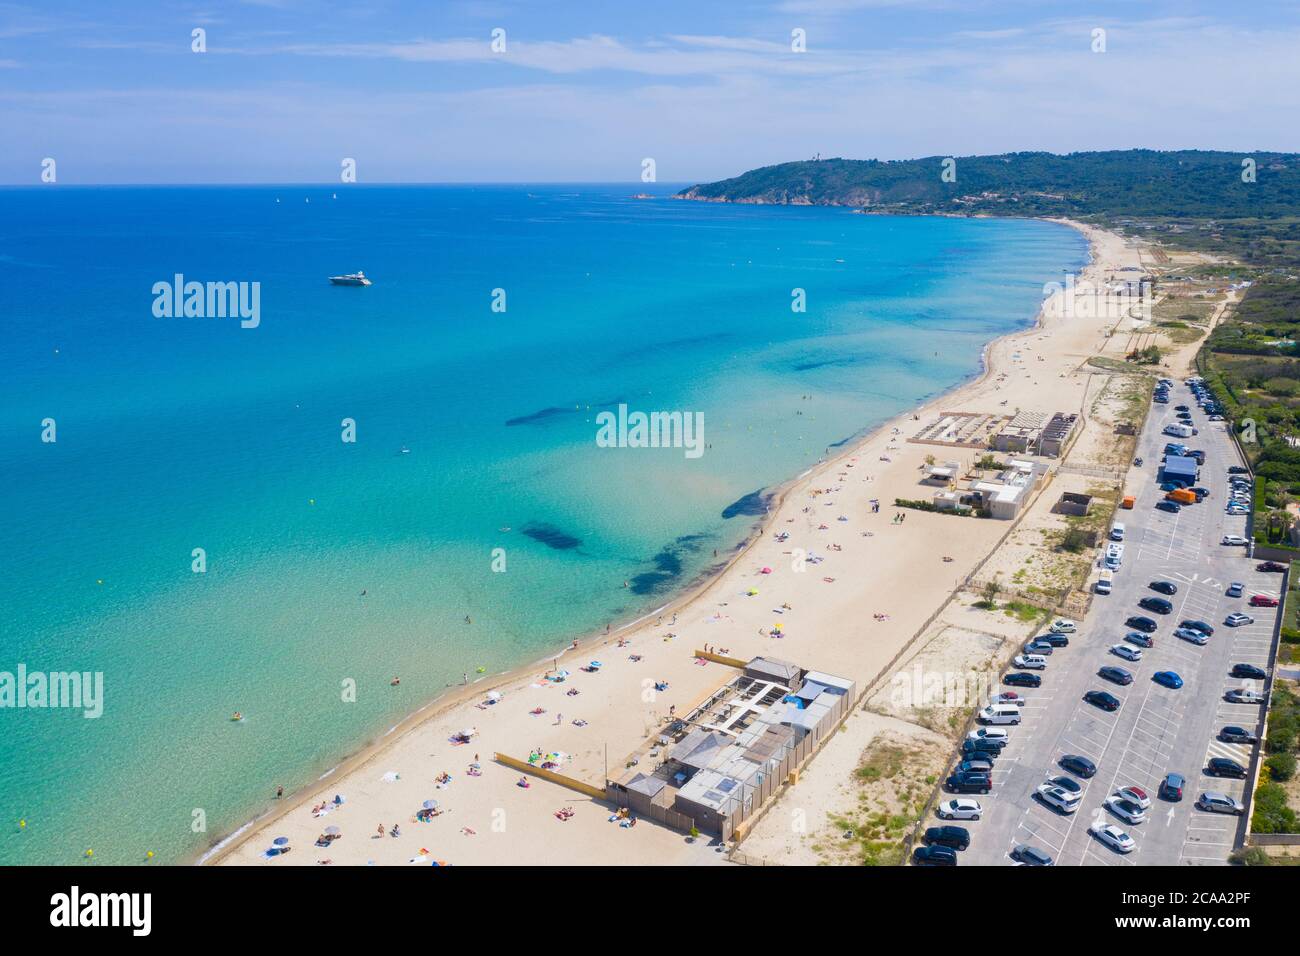 Var département, Ramatuelle - Saint Tropez, vue aérienne de la plage de Pampelonne, la célèbre plage située sur la Côte d'Azur Banque D'Images